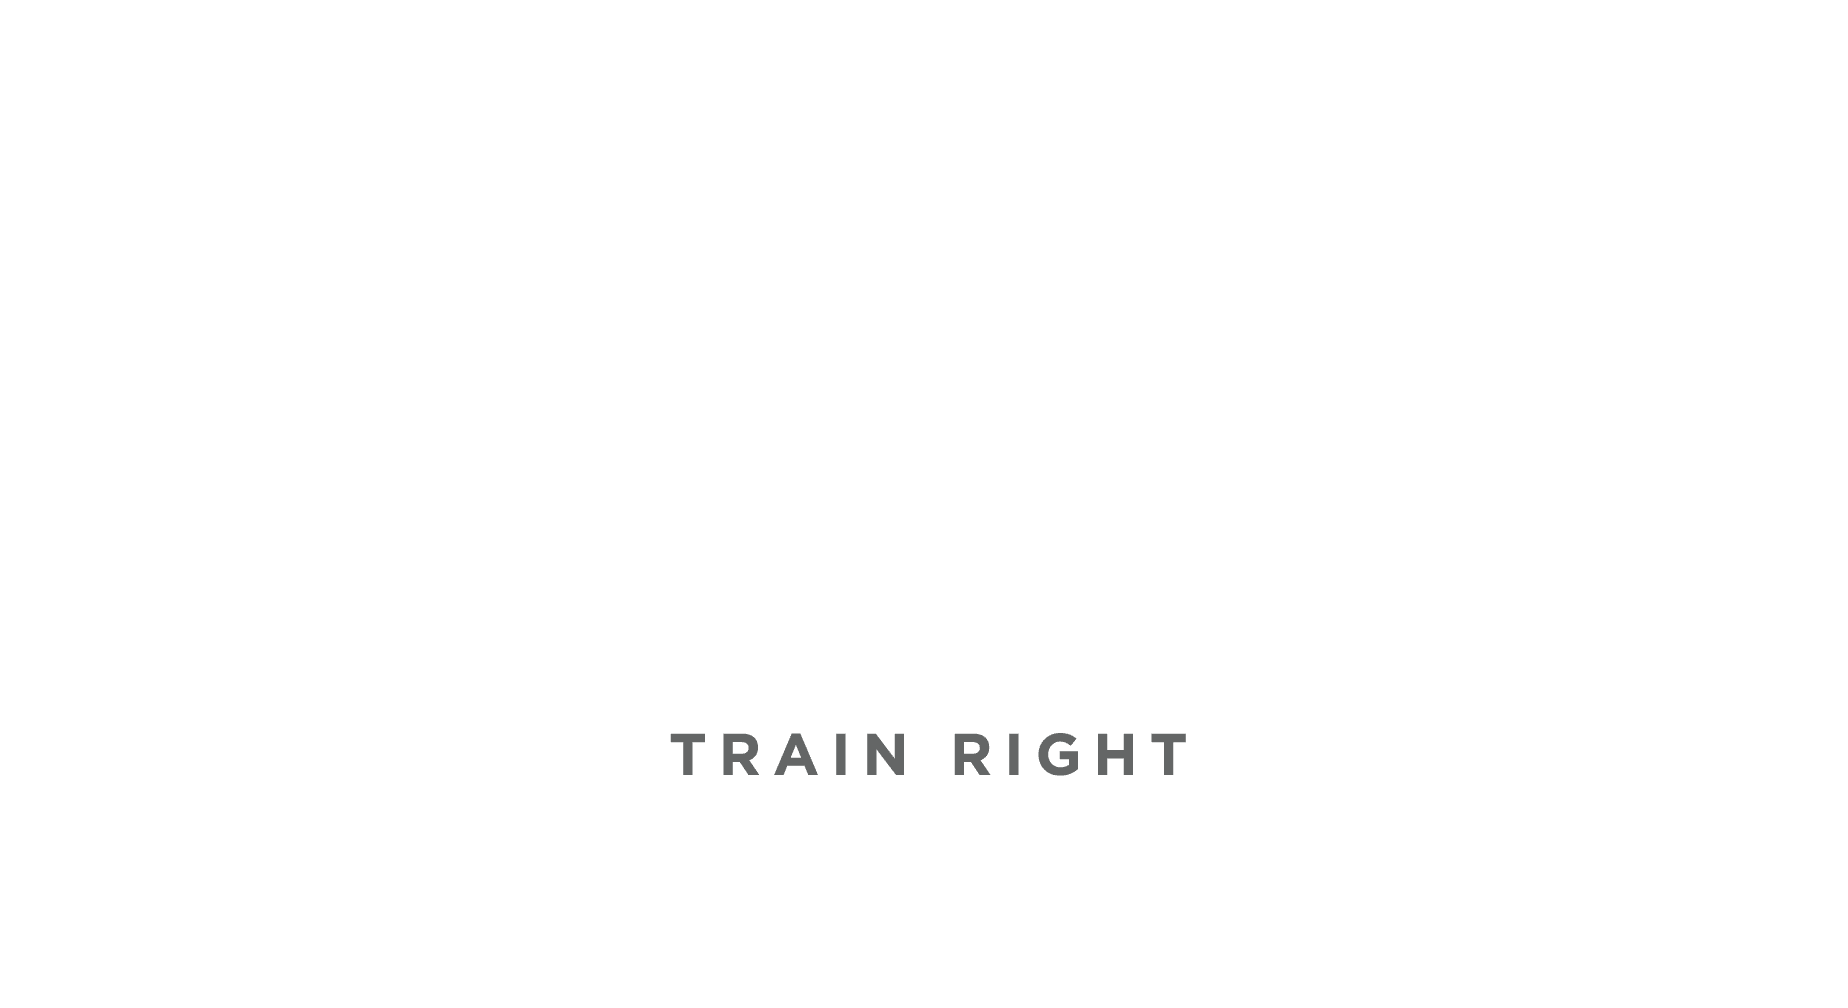 Train Right